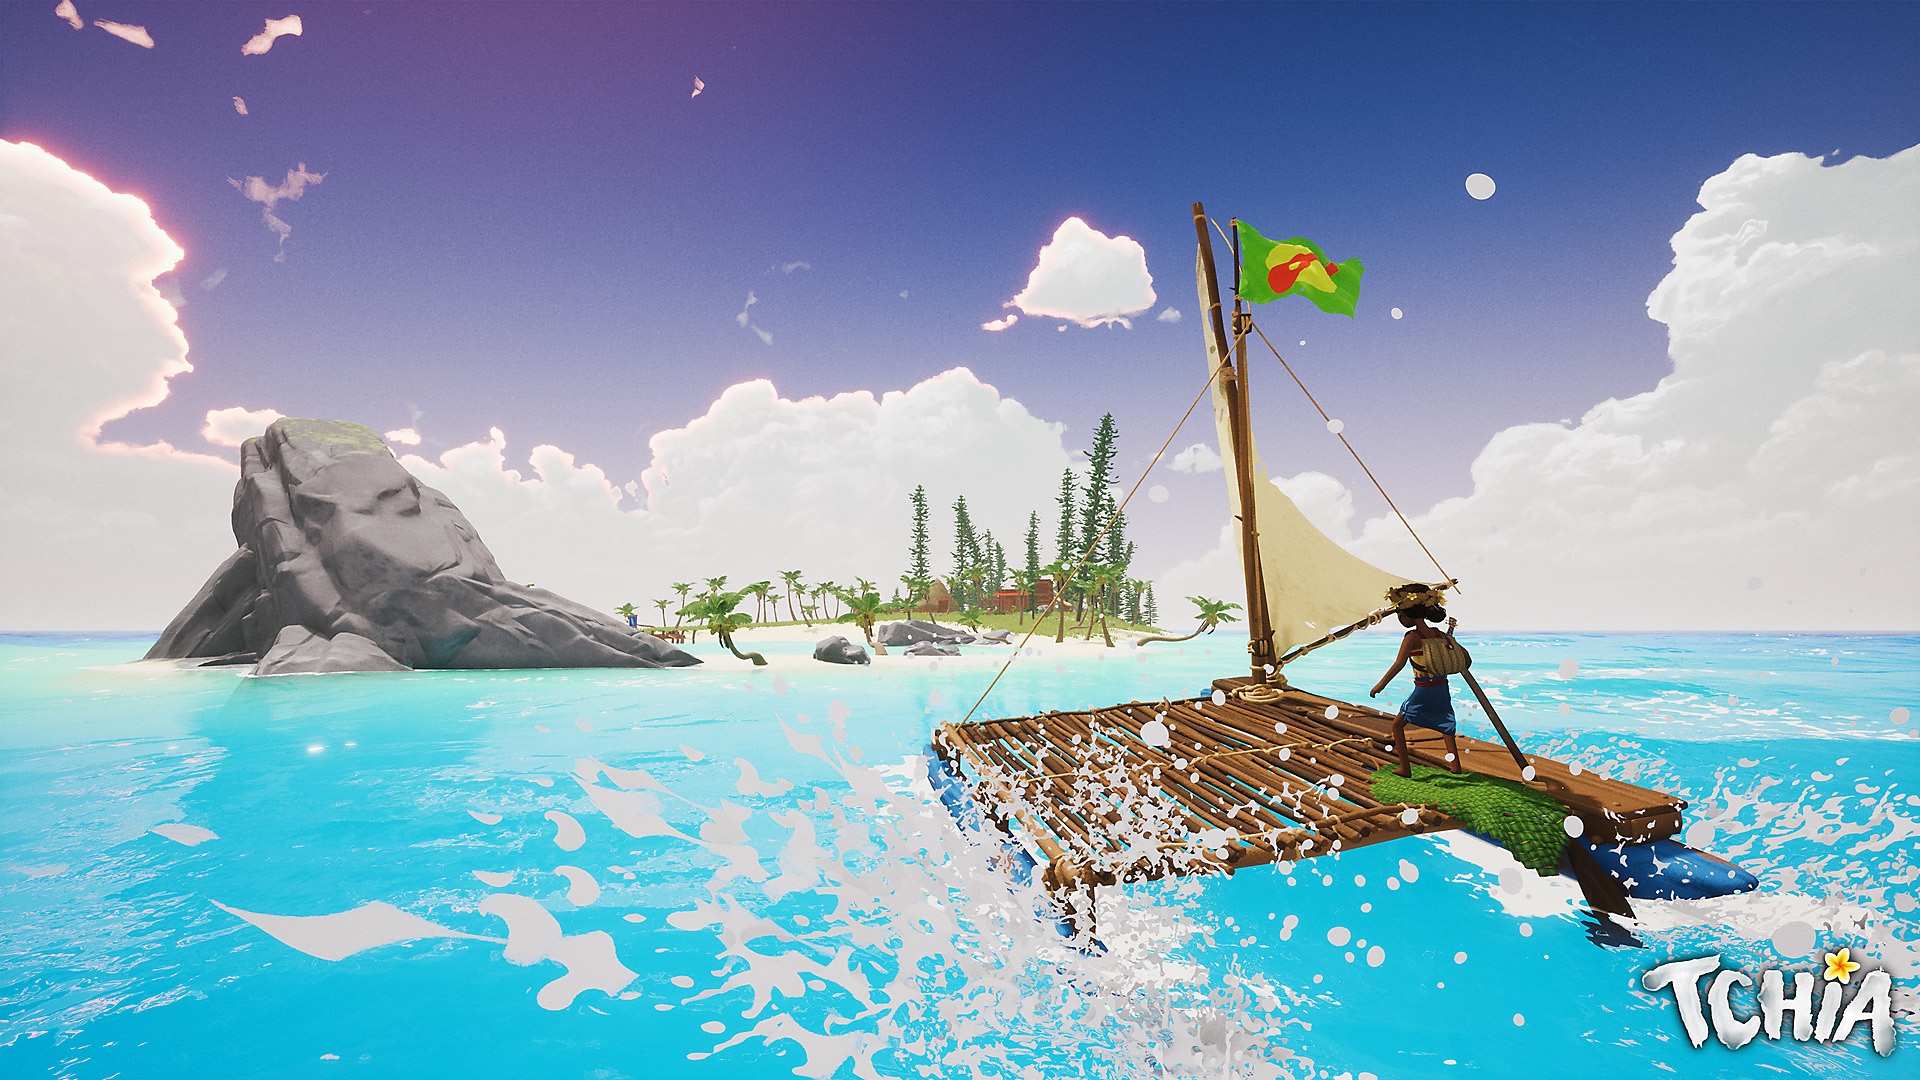 Captura de pantalla de Tchia que muestra al personaje principal navegando en una balsa hacia una isla